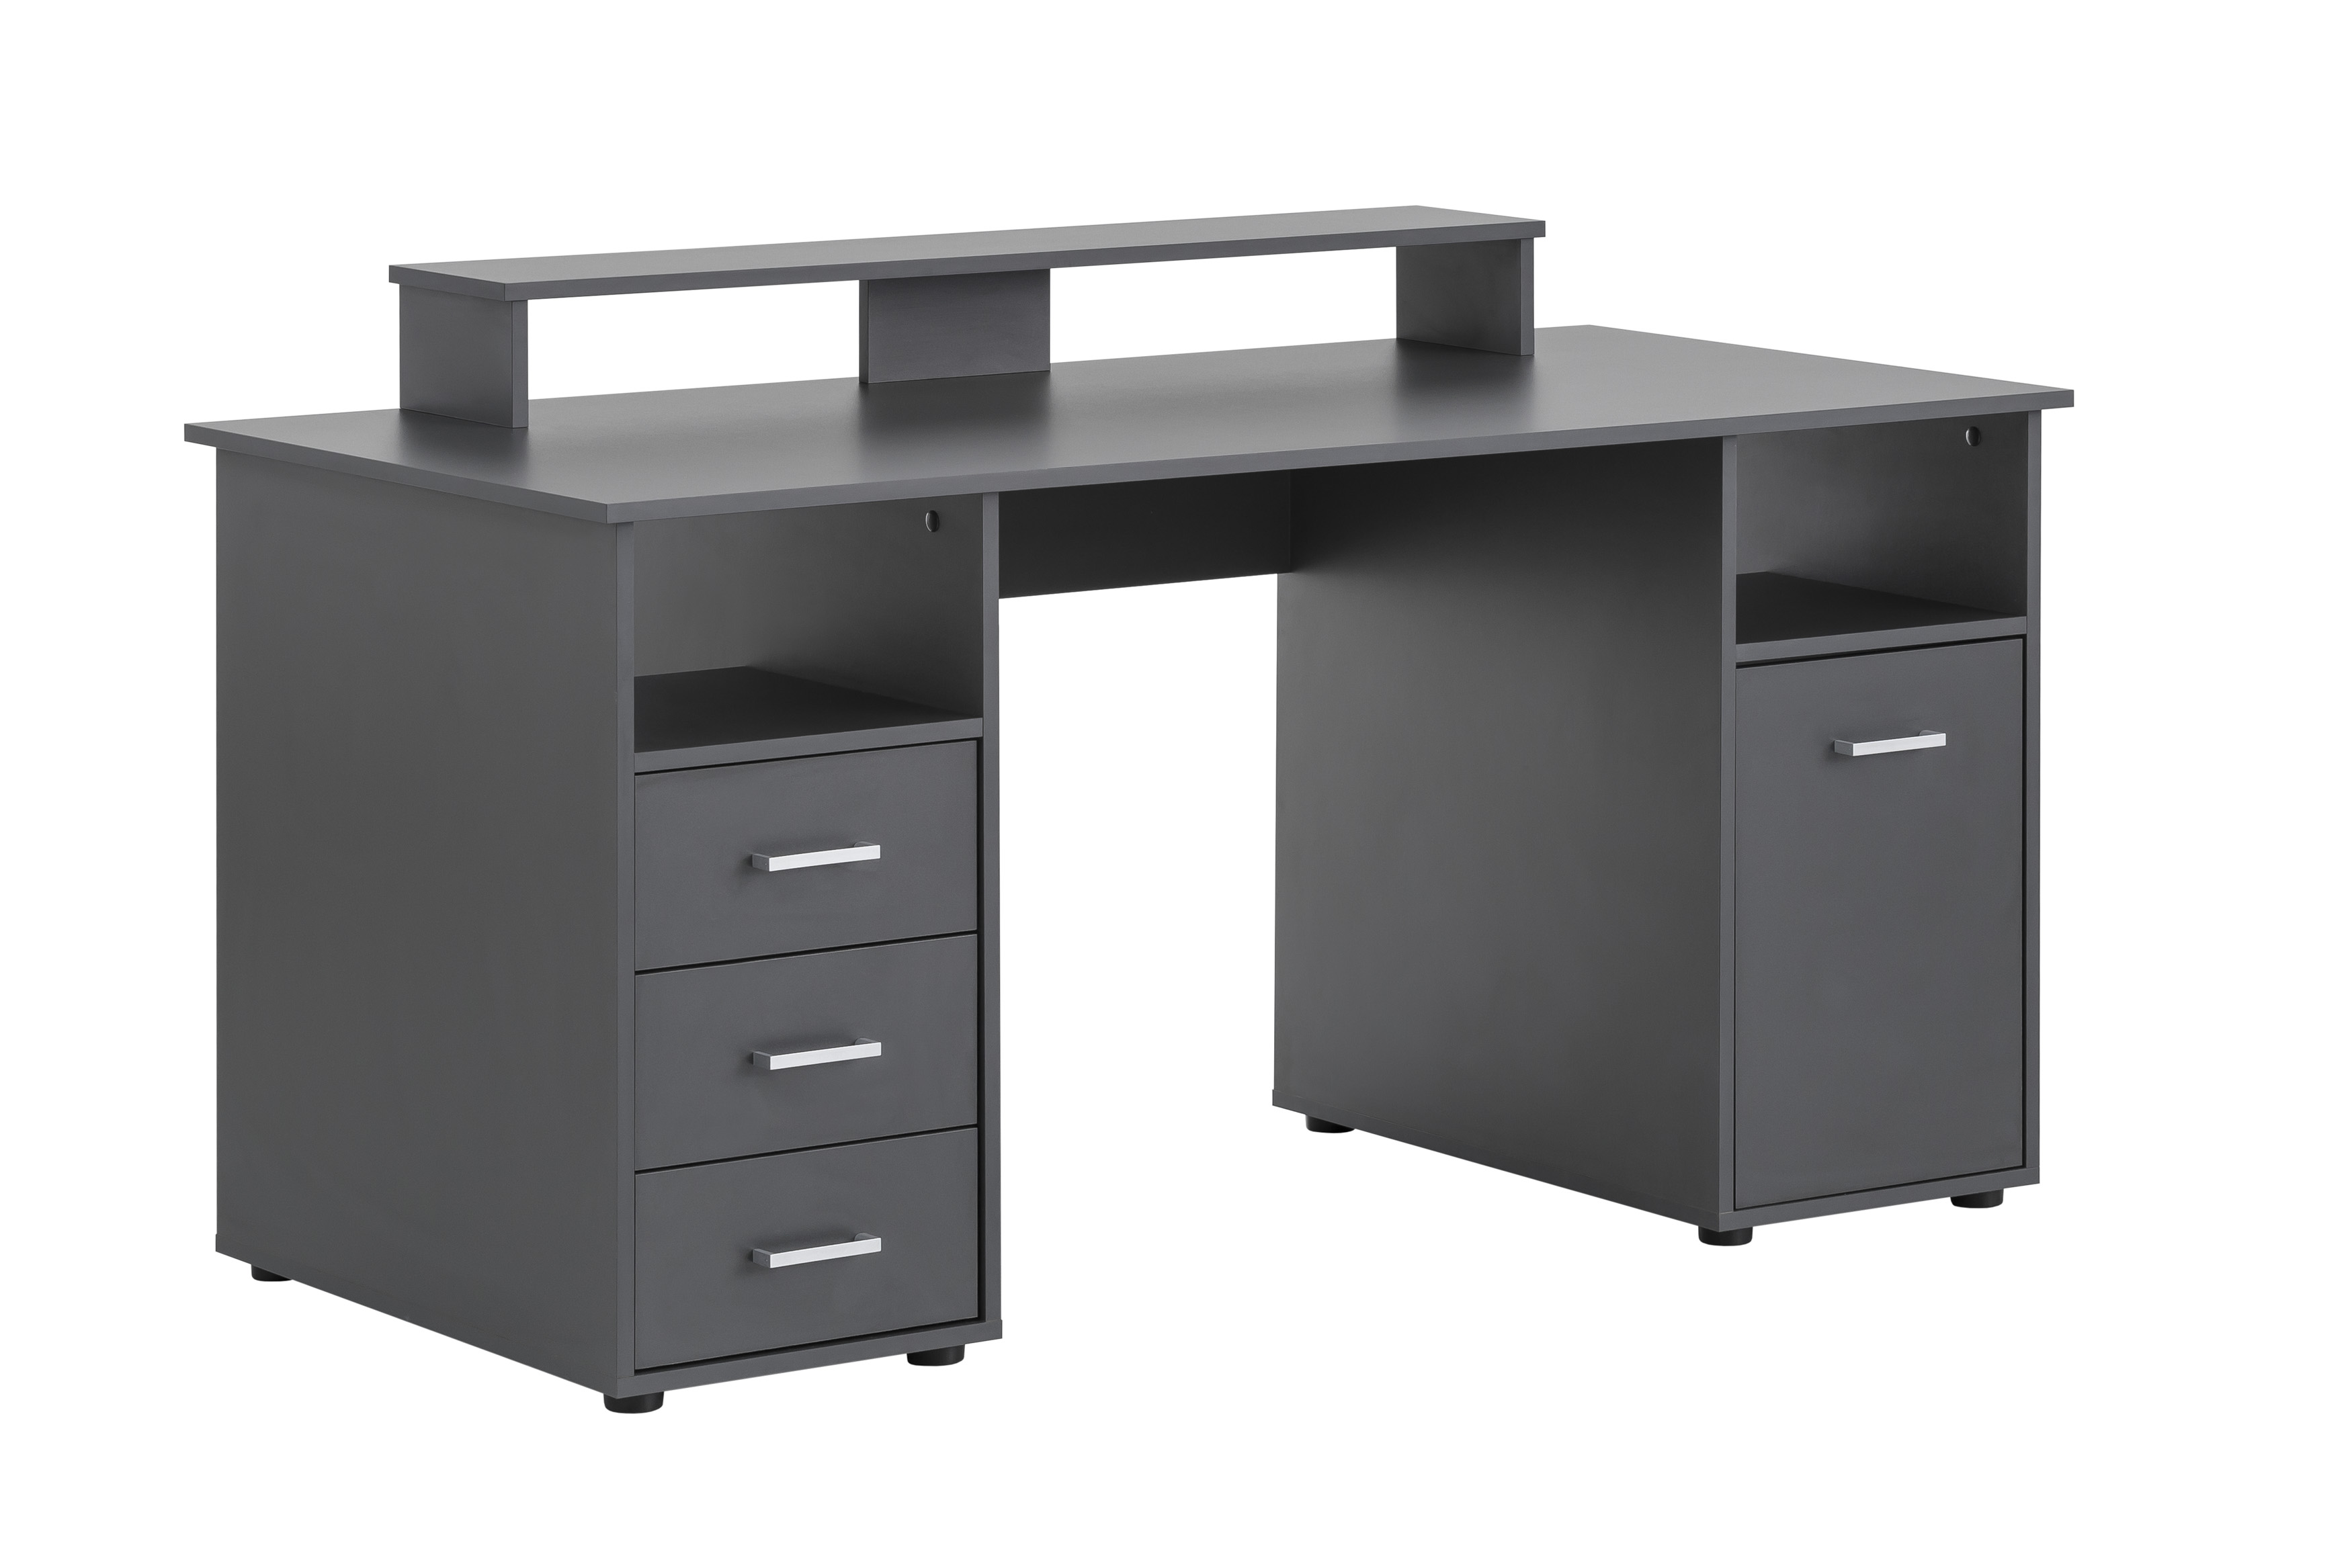 Möbelpartner Schreibtisch Fox | Large | HxBxT 86x150x70cm | 3 Schubladen, 2 offene Fächer, 1 Fach mit Flügeltür & Monitorständer | Anthrazit